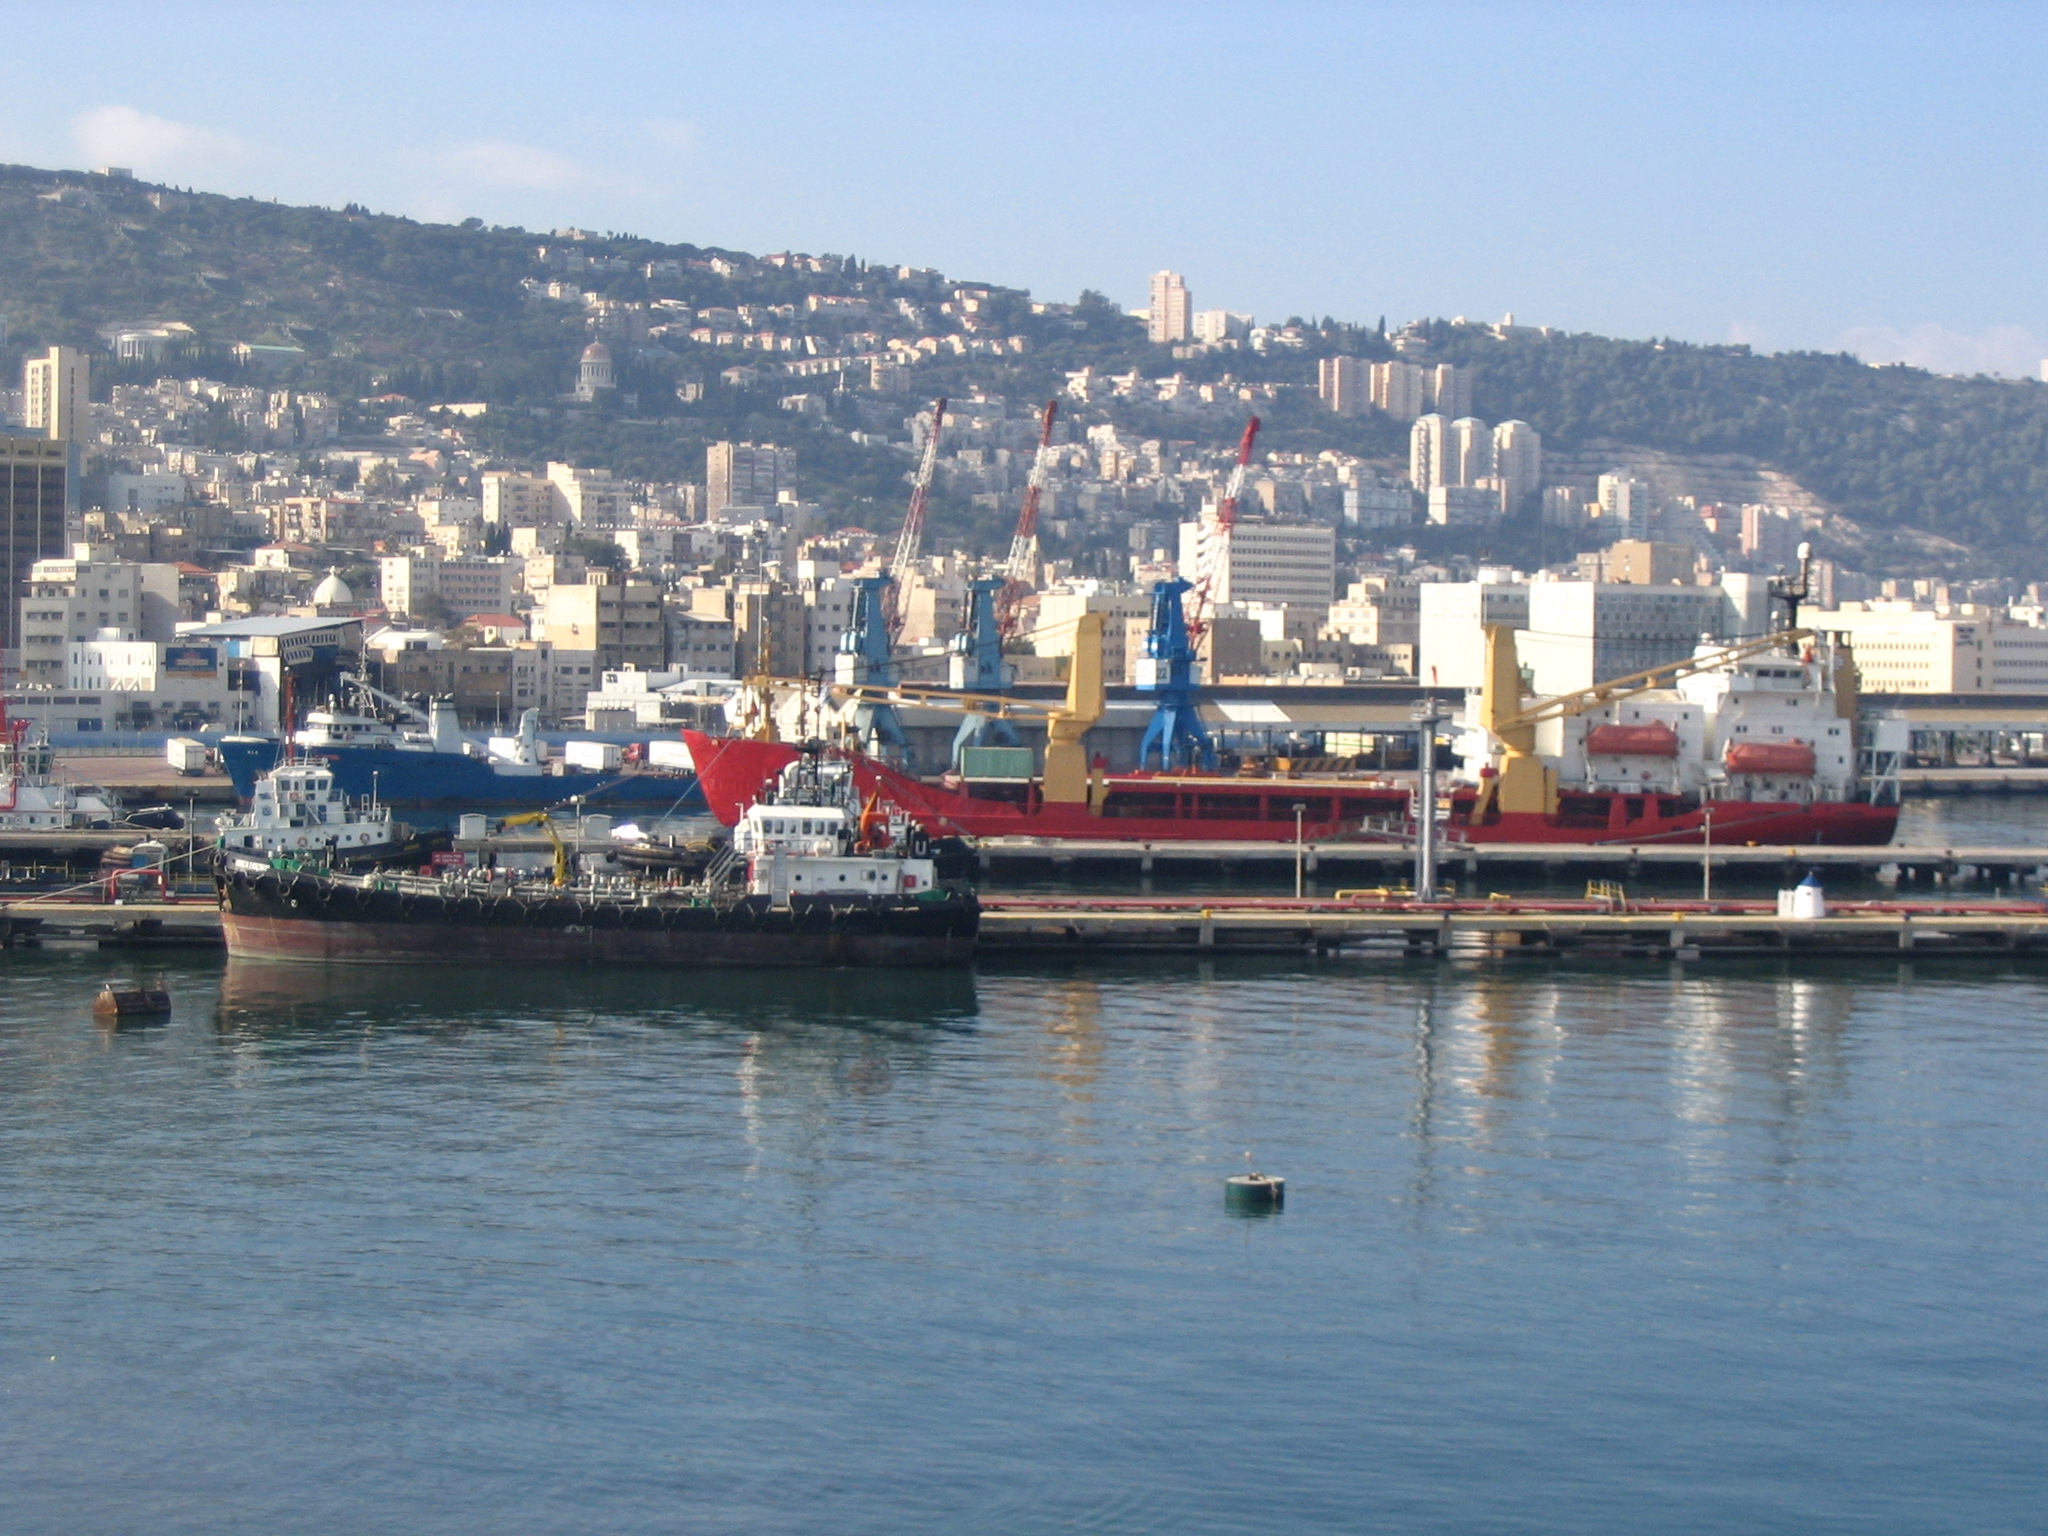 الأسطول السادس الأمريكى قواعده وأهم أسلحته  Port_of_Haifa,_viewed_from_the_sea